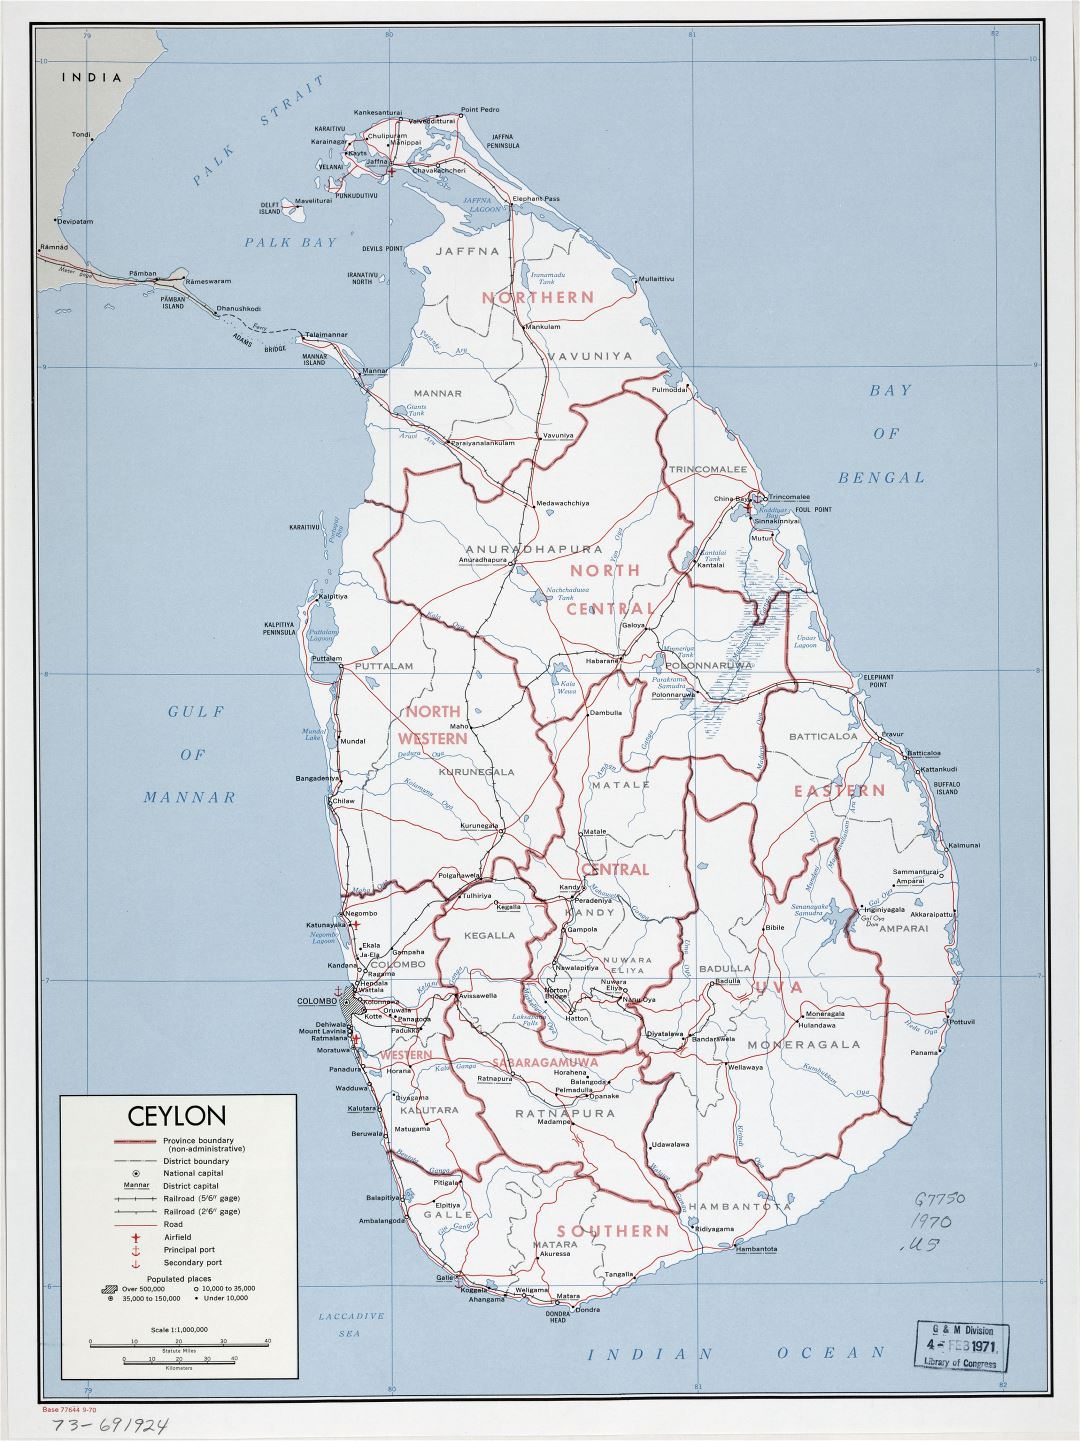 Grande detallado mapa político y administrativo de Sri Lanka (Ceilán) con carreteras, ferrocarriles, puertos, aeropuertos y ciudades - 1970